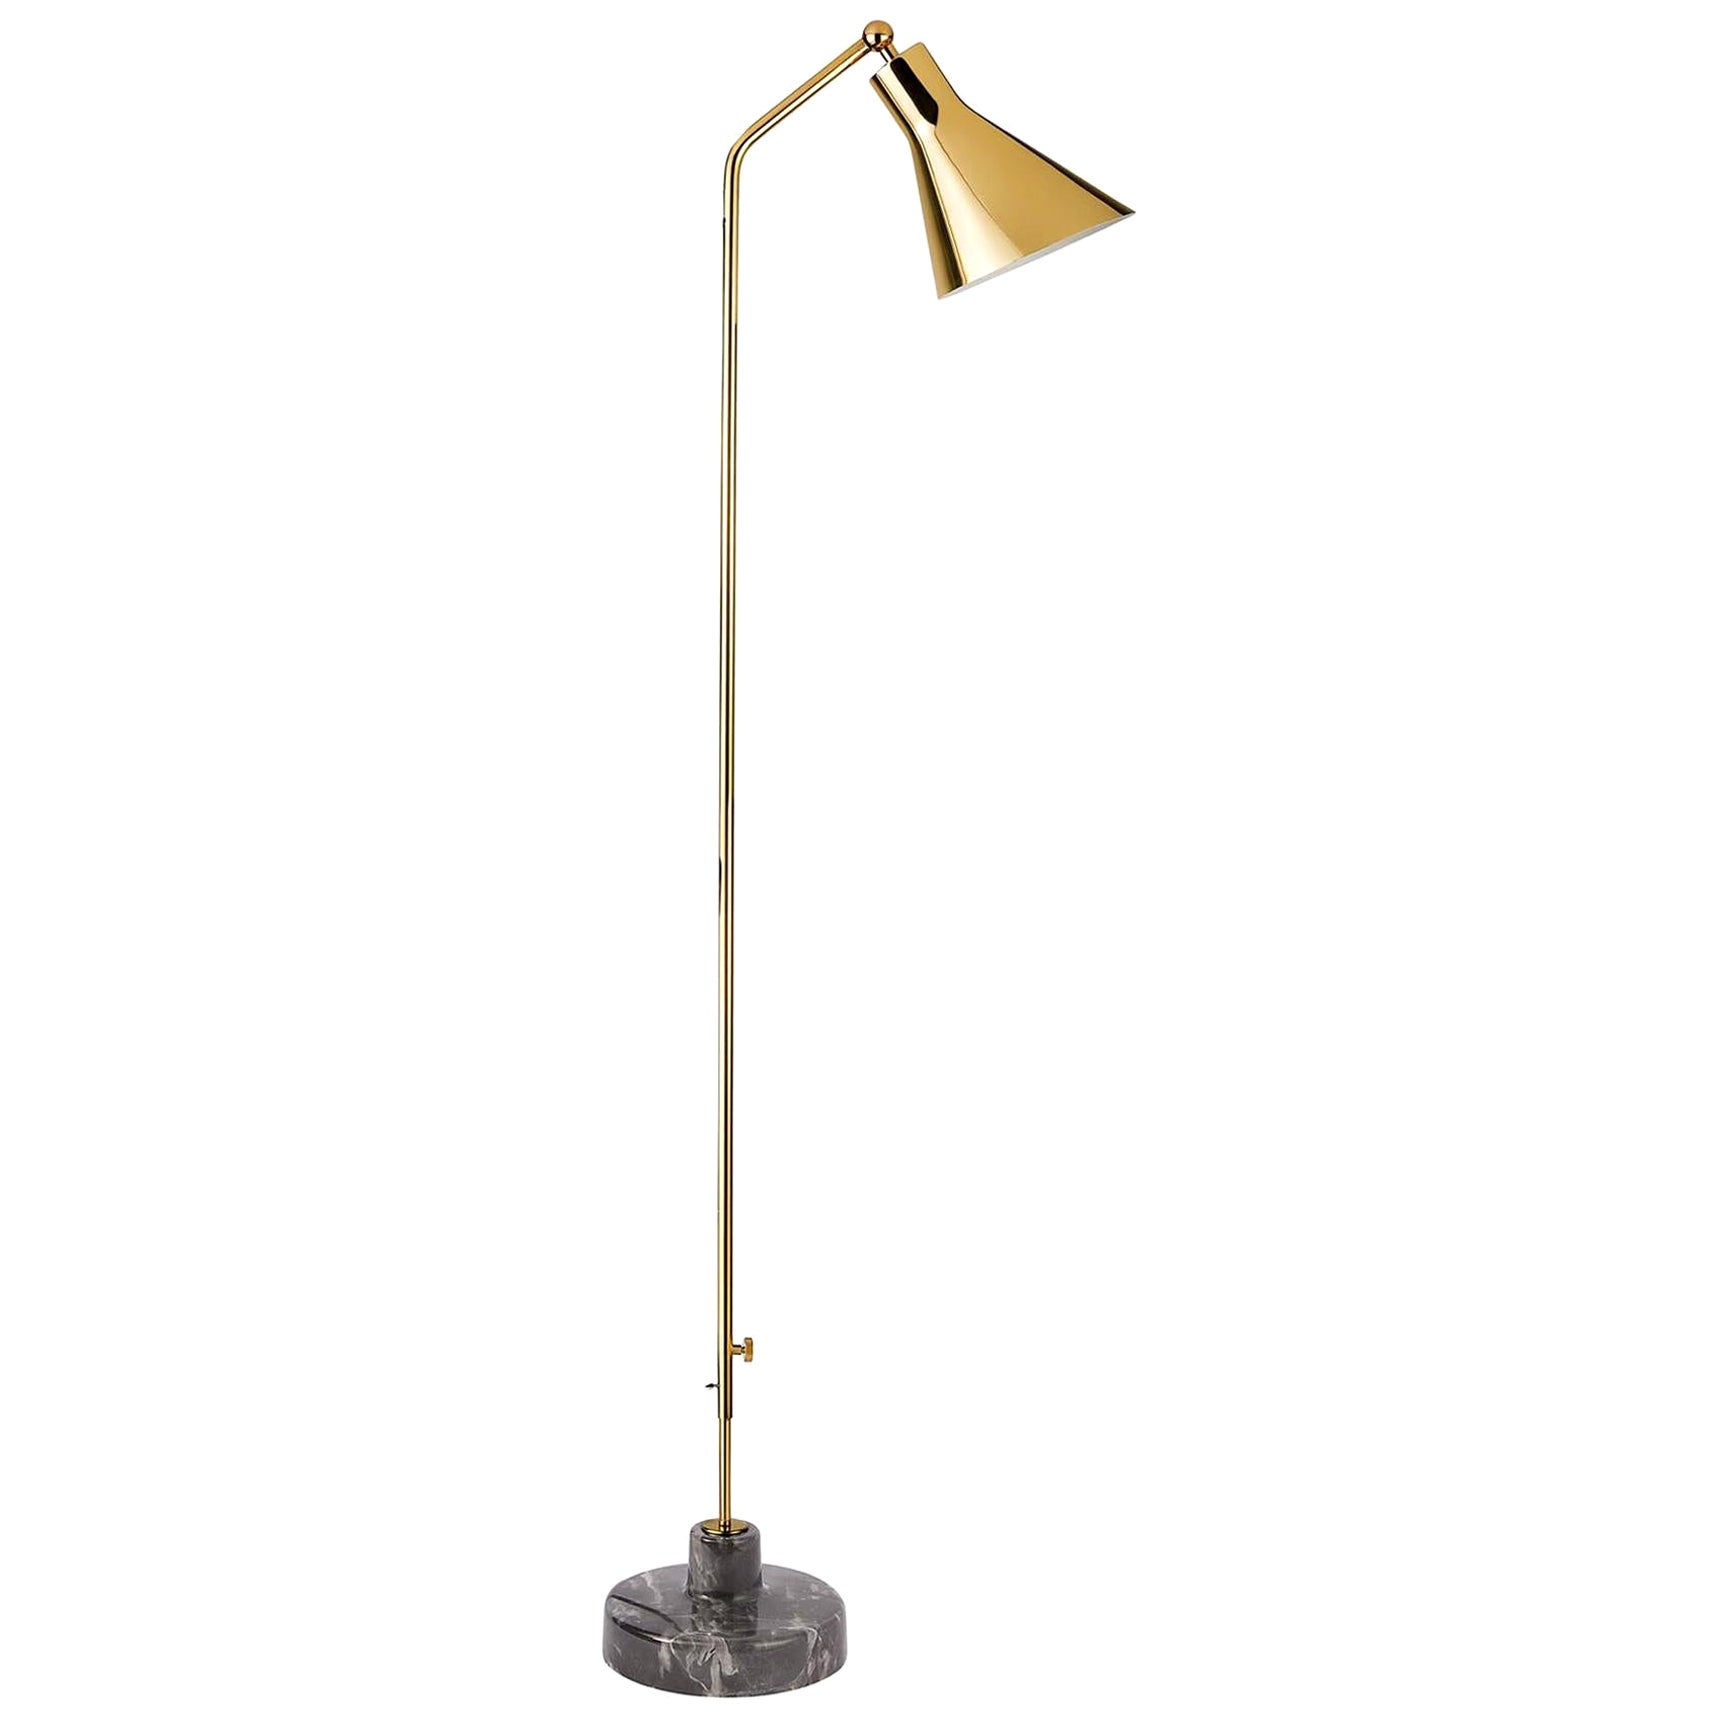 Ignazio Gardella Alzabile Floor Lamp in Brass and Gray Marble for Tato Italia For Sale